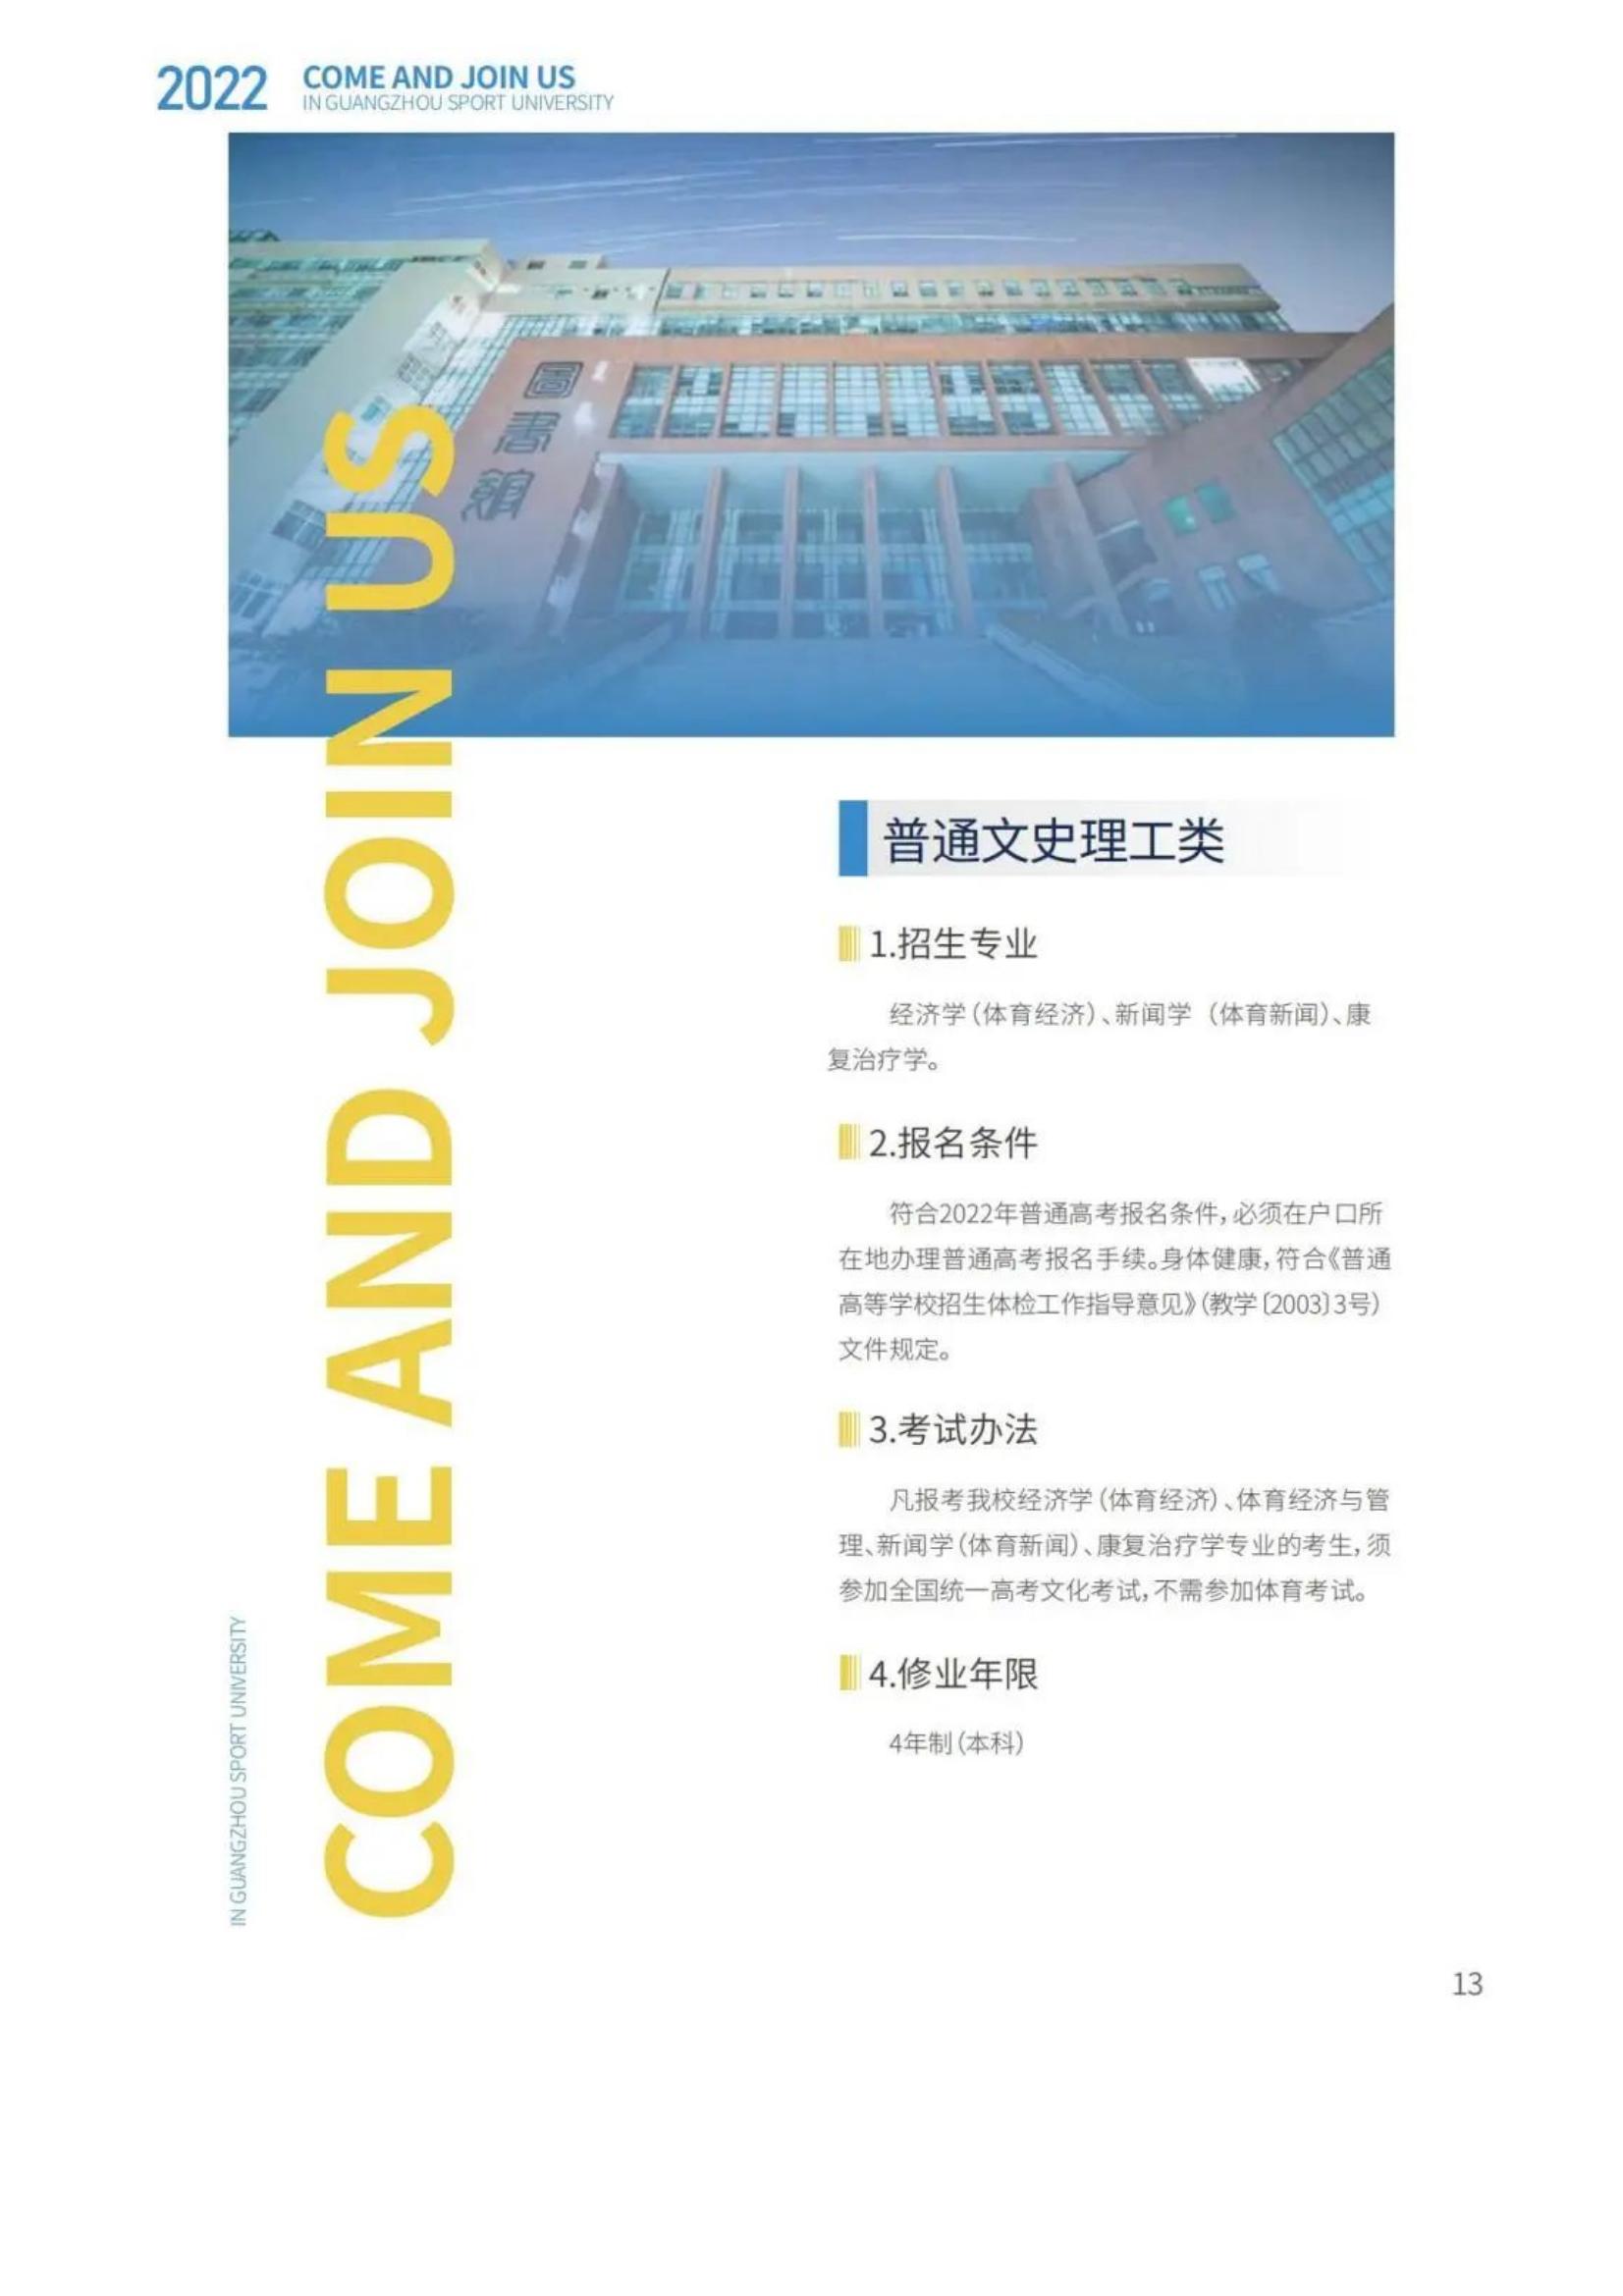 广州体育学院2022年报考指南发布_15.jpg